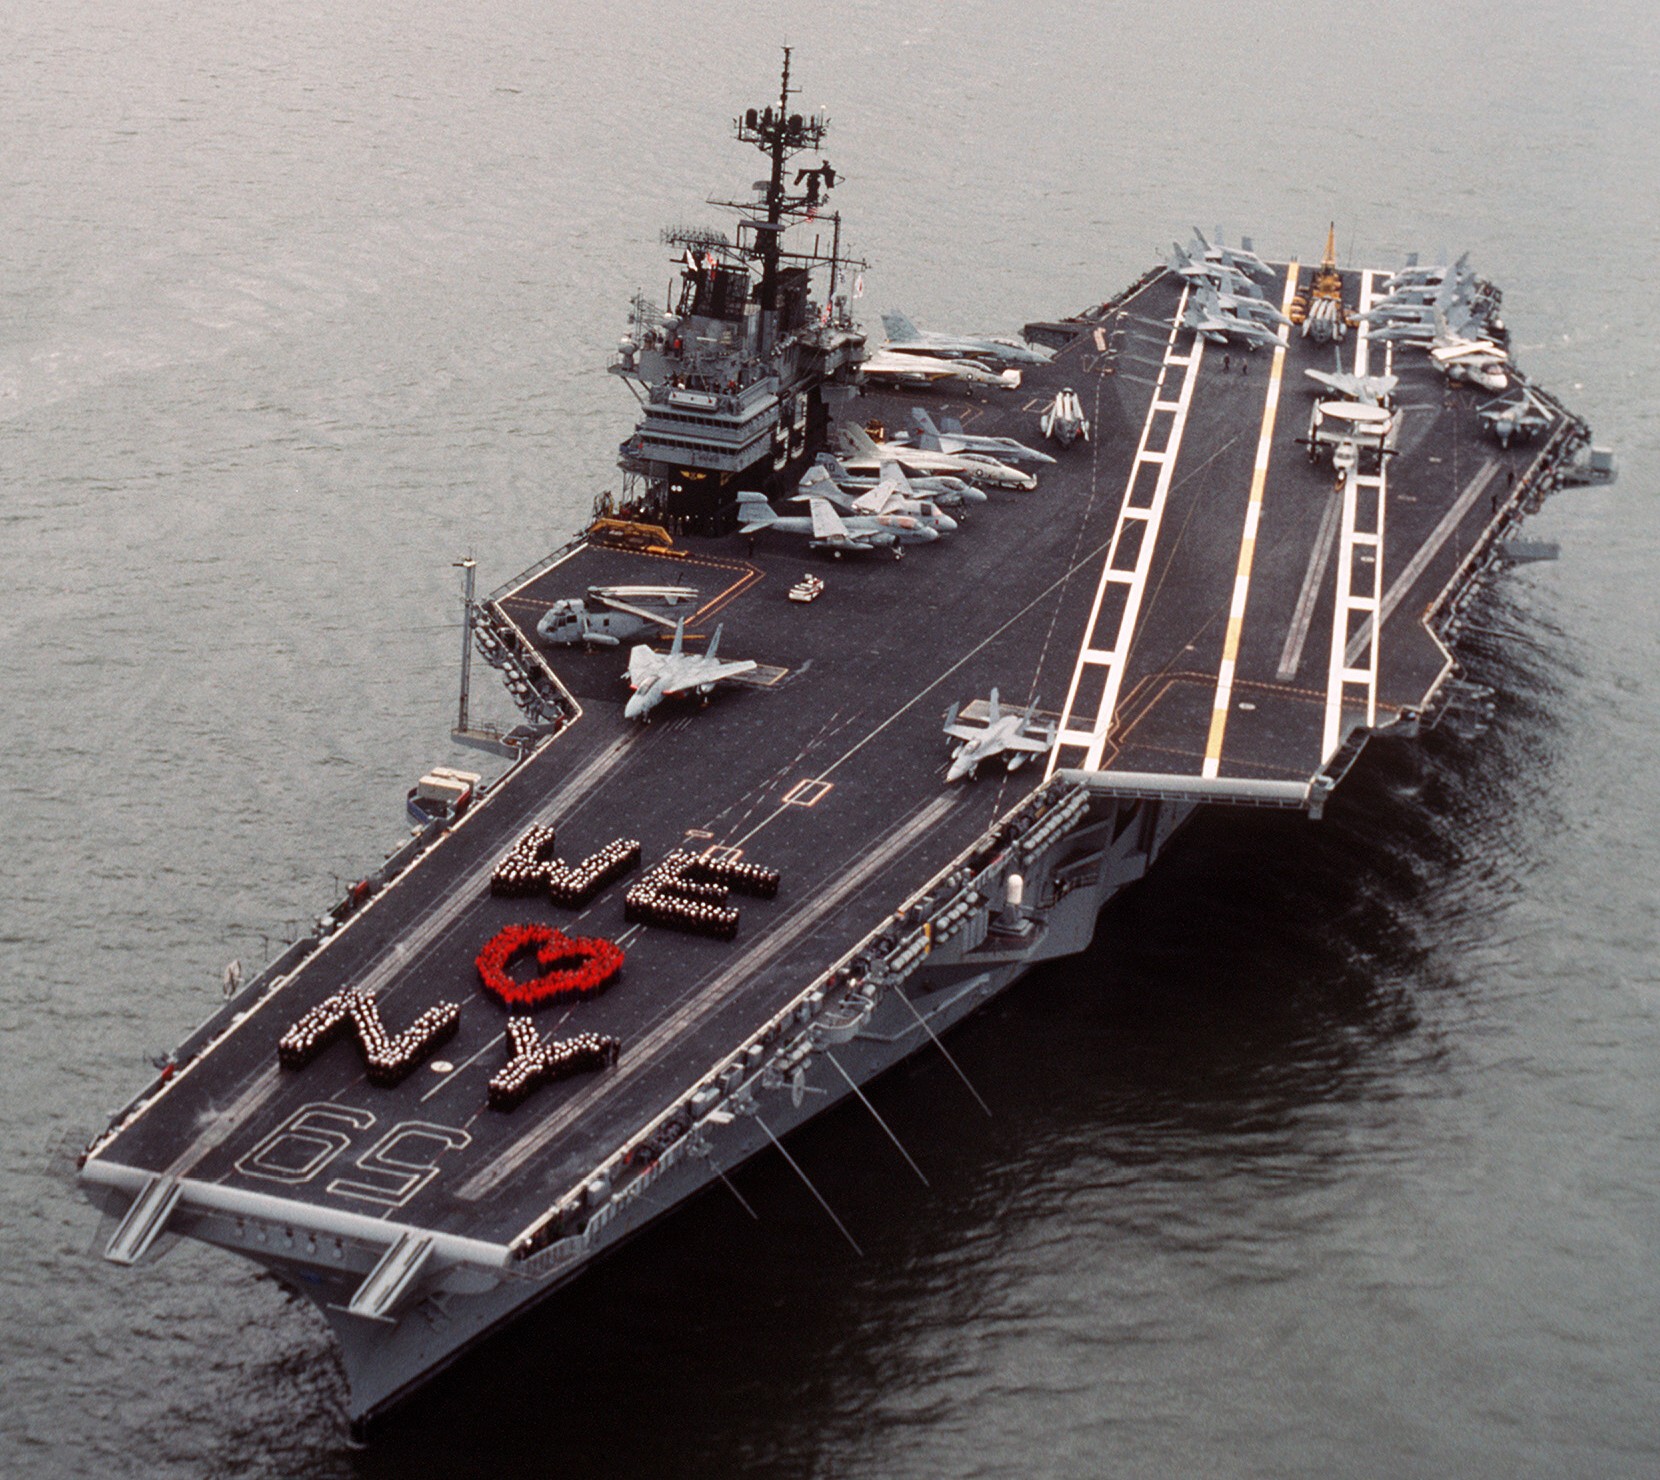 cv-59 uss forrestal aircraft carrier us navy fleet week new york 1989 101